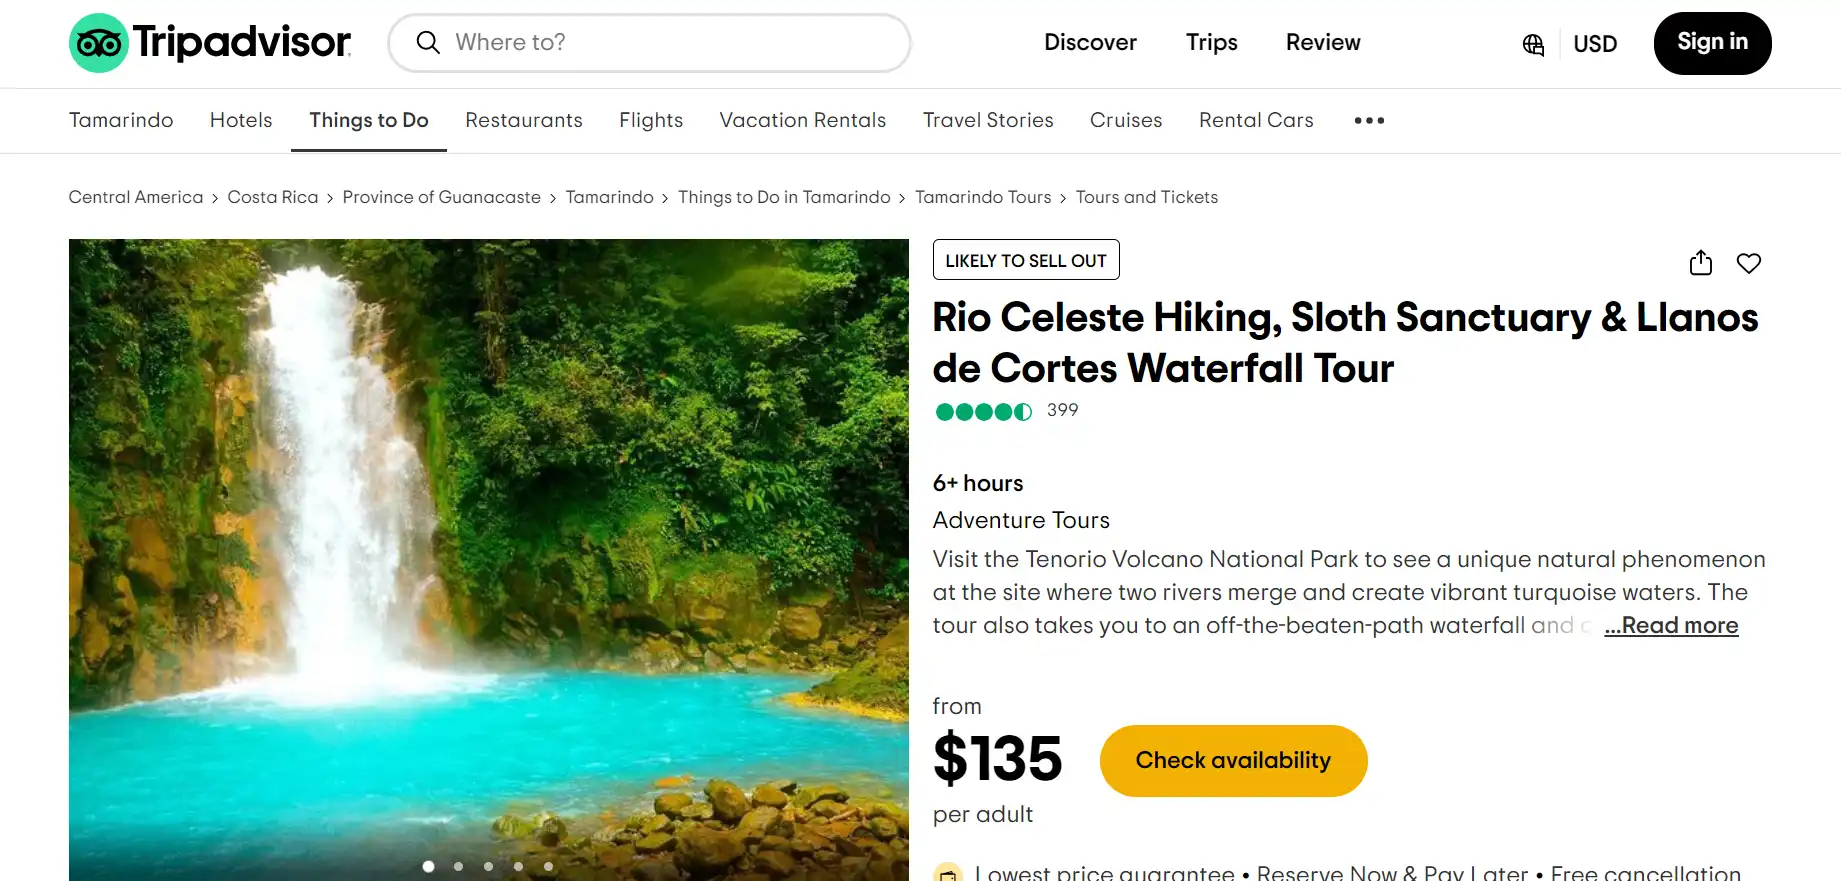 Rio Celeste Hiking, Sloth Sanctuary & Lianos de Cortes Waterfall Tour